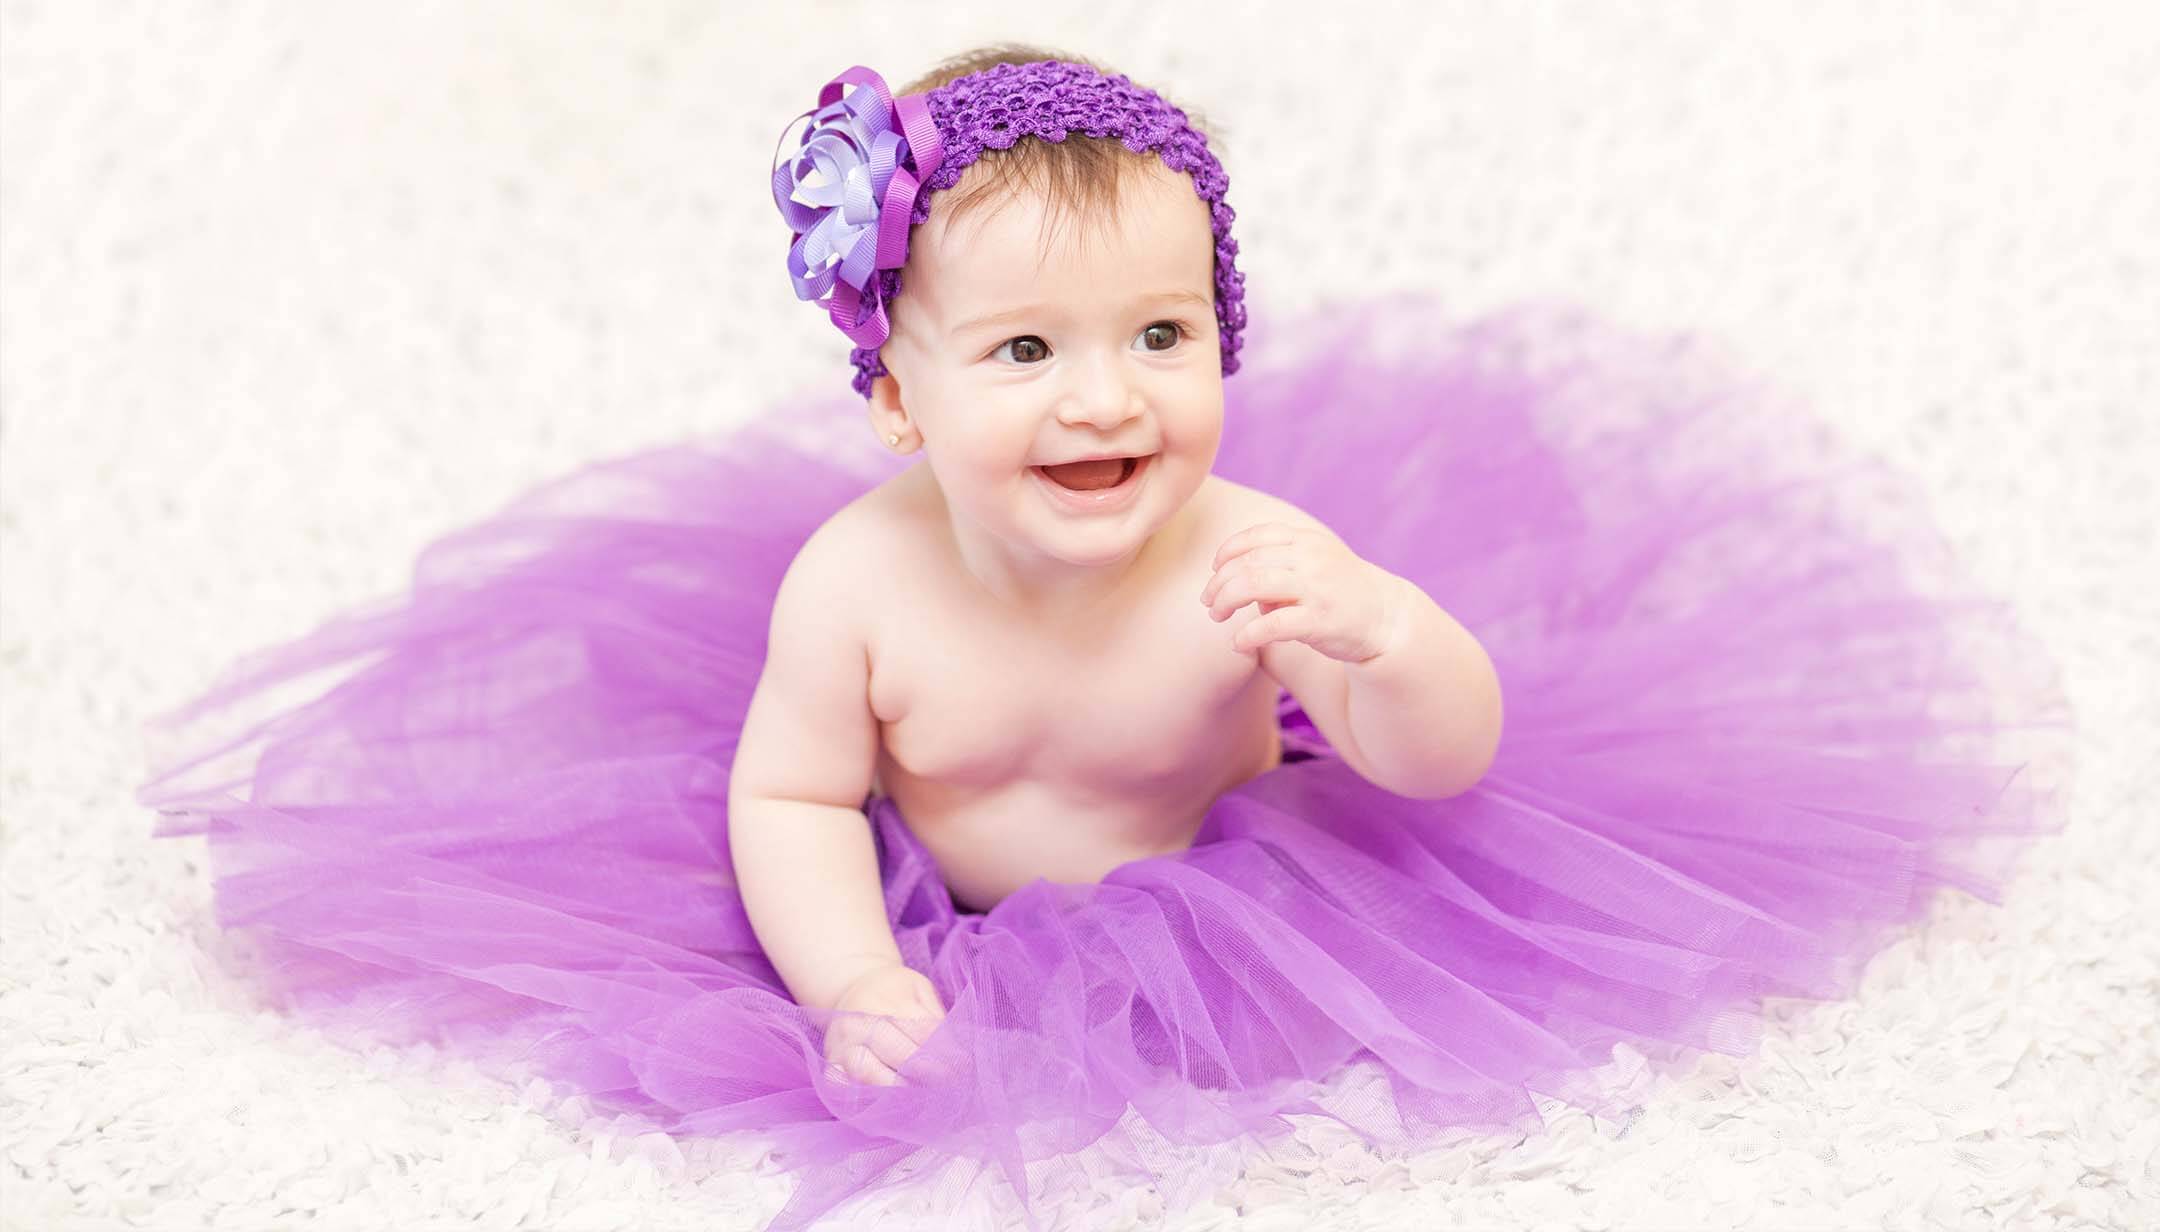 Nel fare foto artistiche al bebè, è importante farlo risaltare sullo sfondo